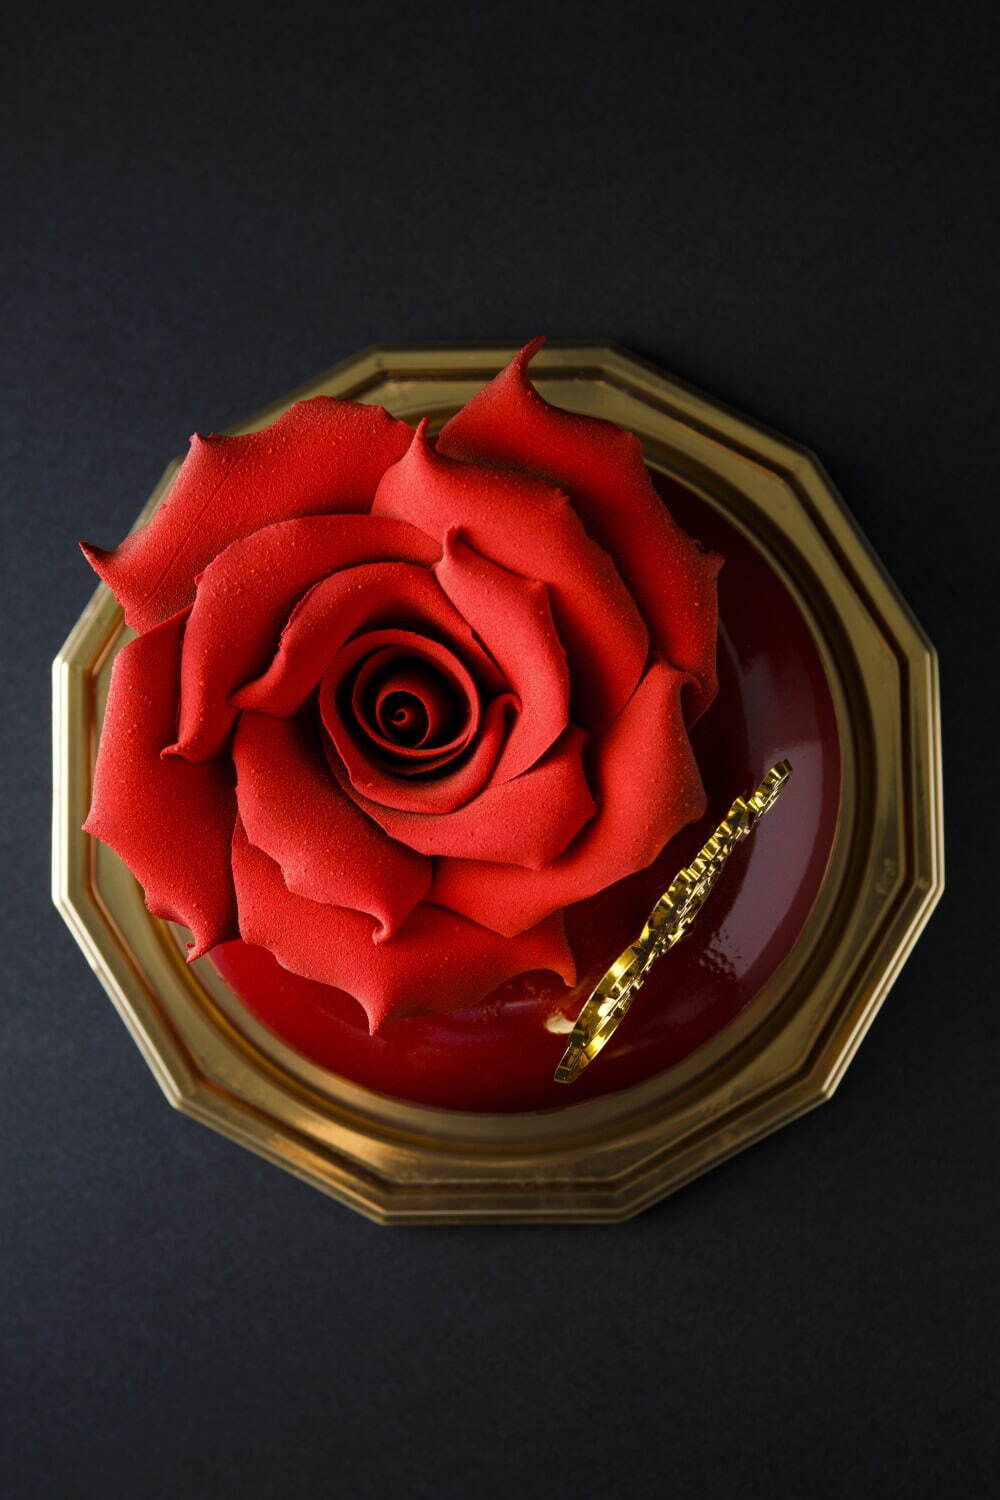 「ノエル・ショコラローズ(Noël Chocolat Rose)」直径12cm×高さ12cm 5,000円